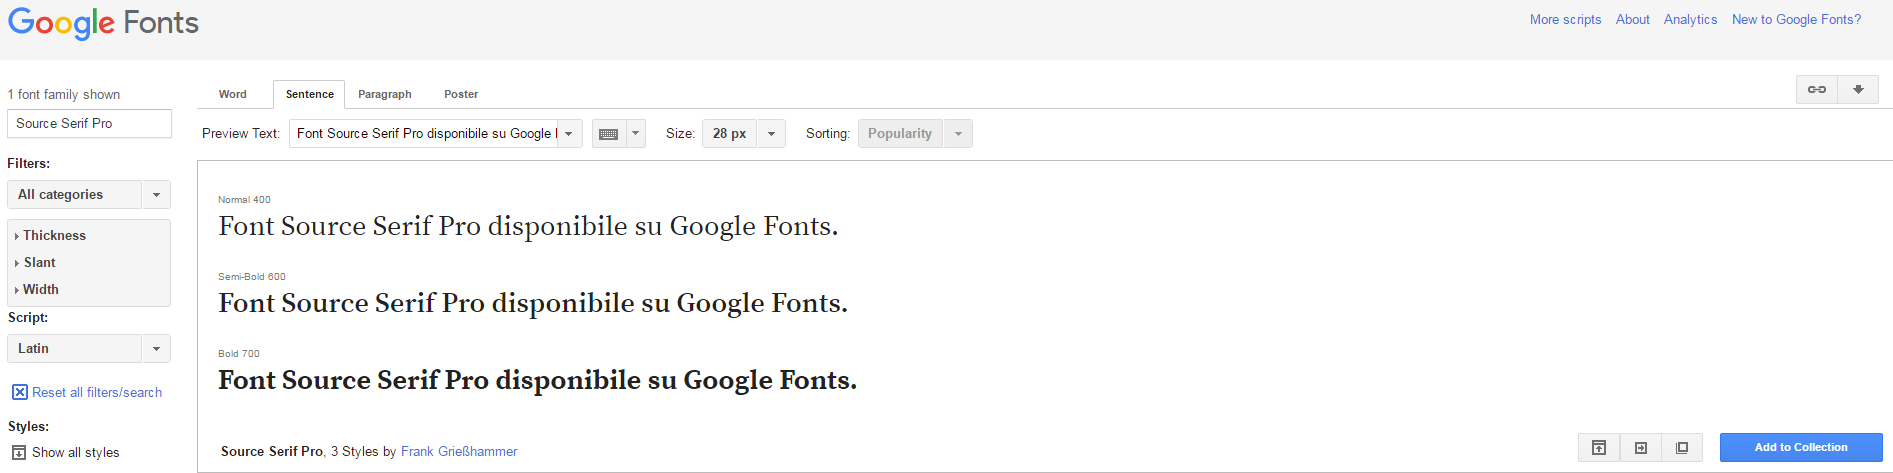 Alt-Text: Diverse versioni del font Source Serif Pro disponibili su Google Fonts